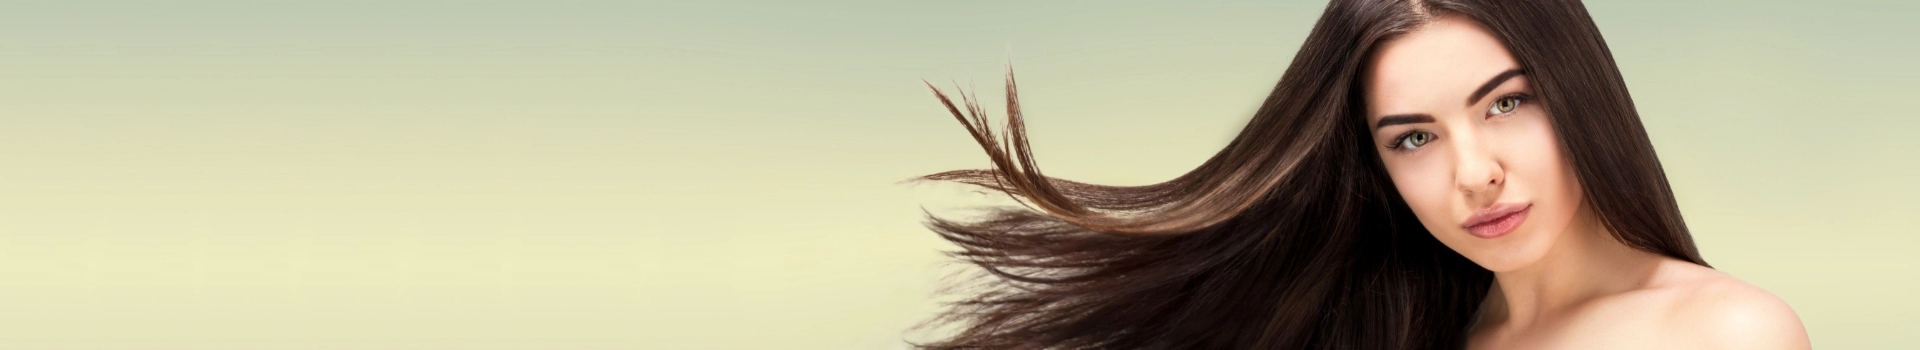 Kobieta z rozwianymi włosami na oliwkowym tle